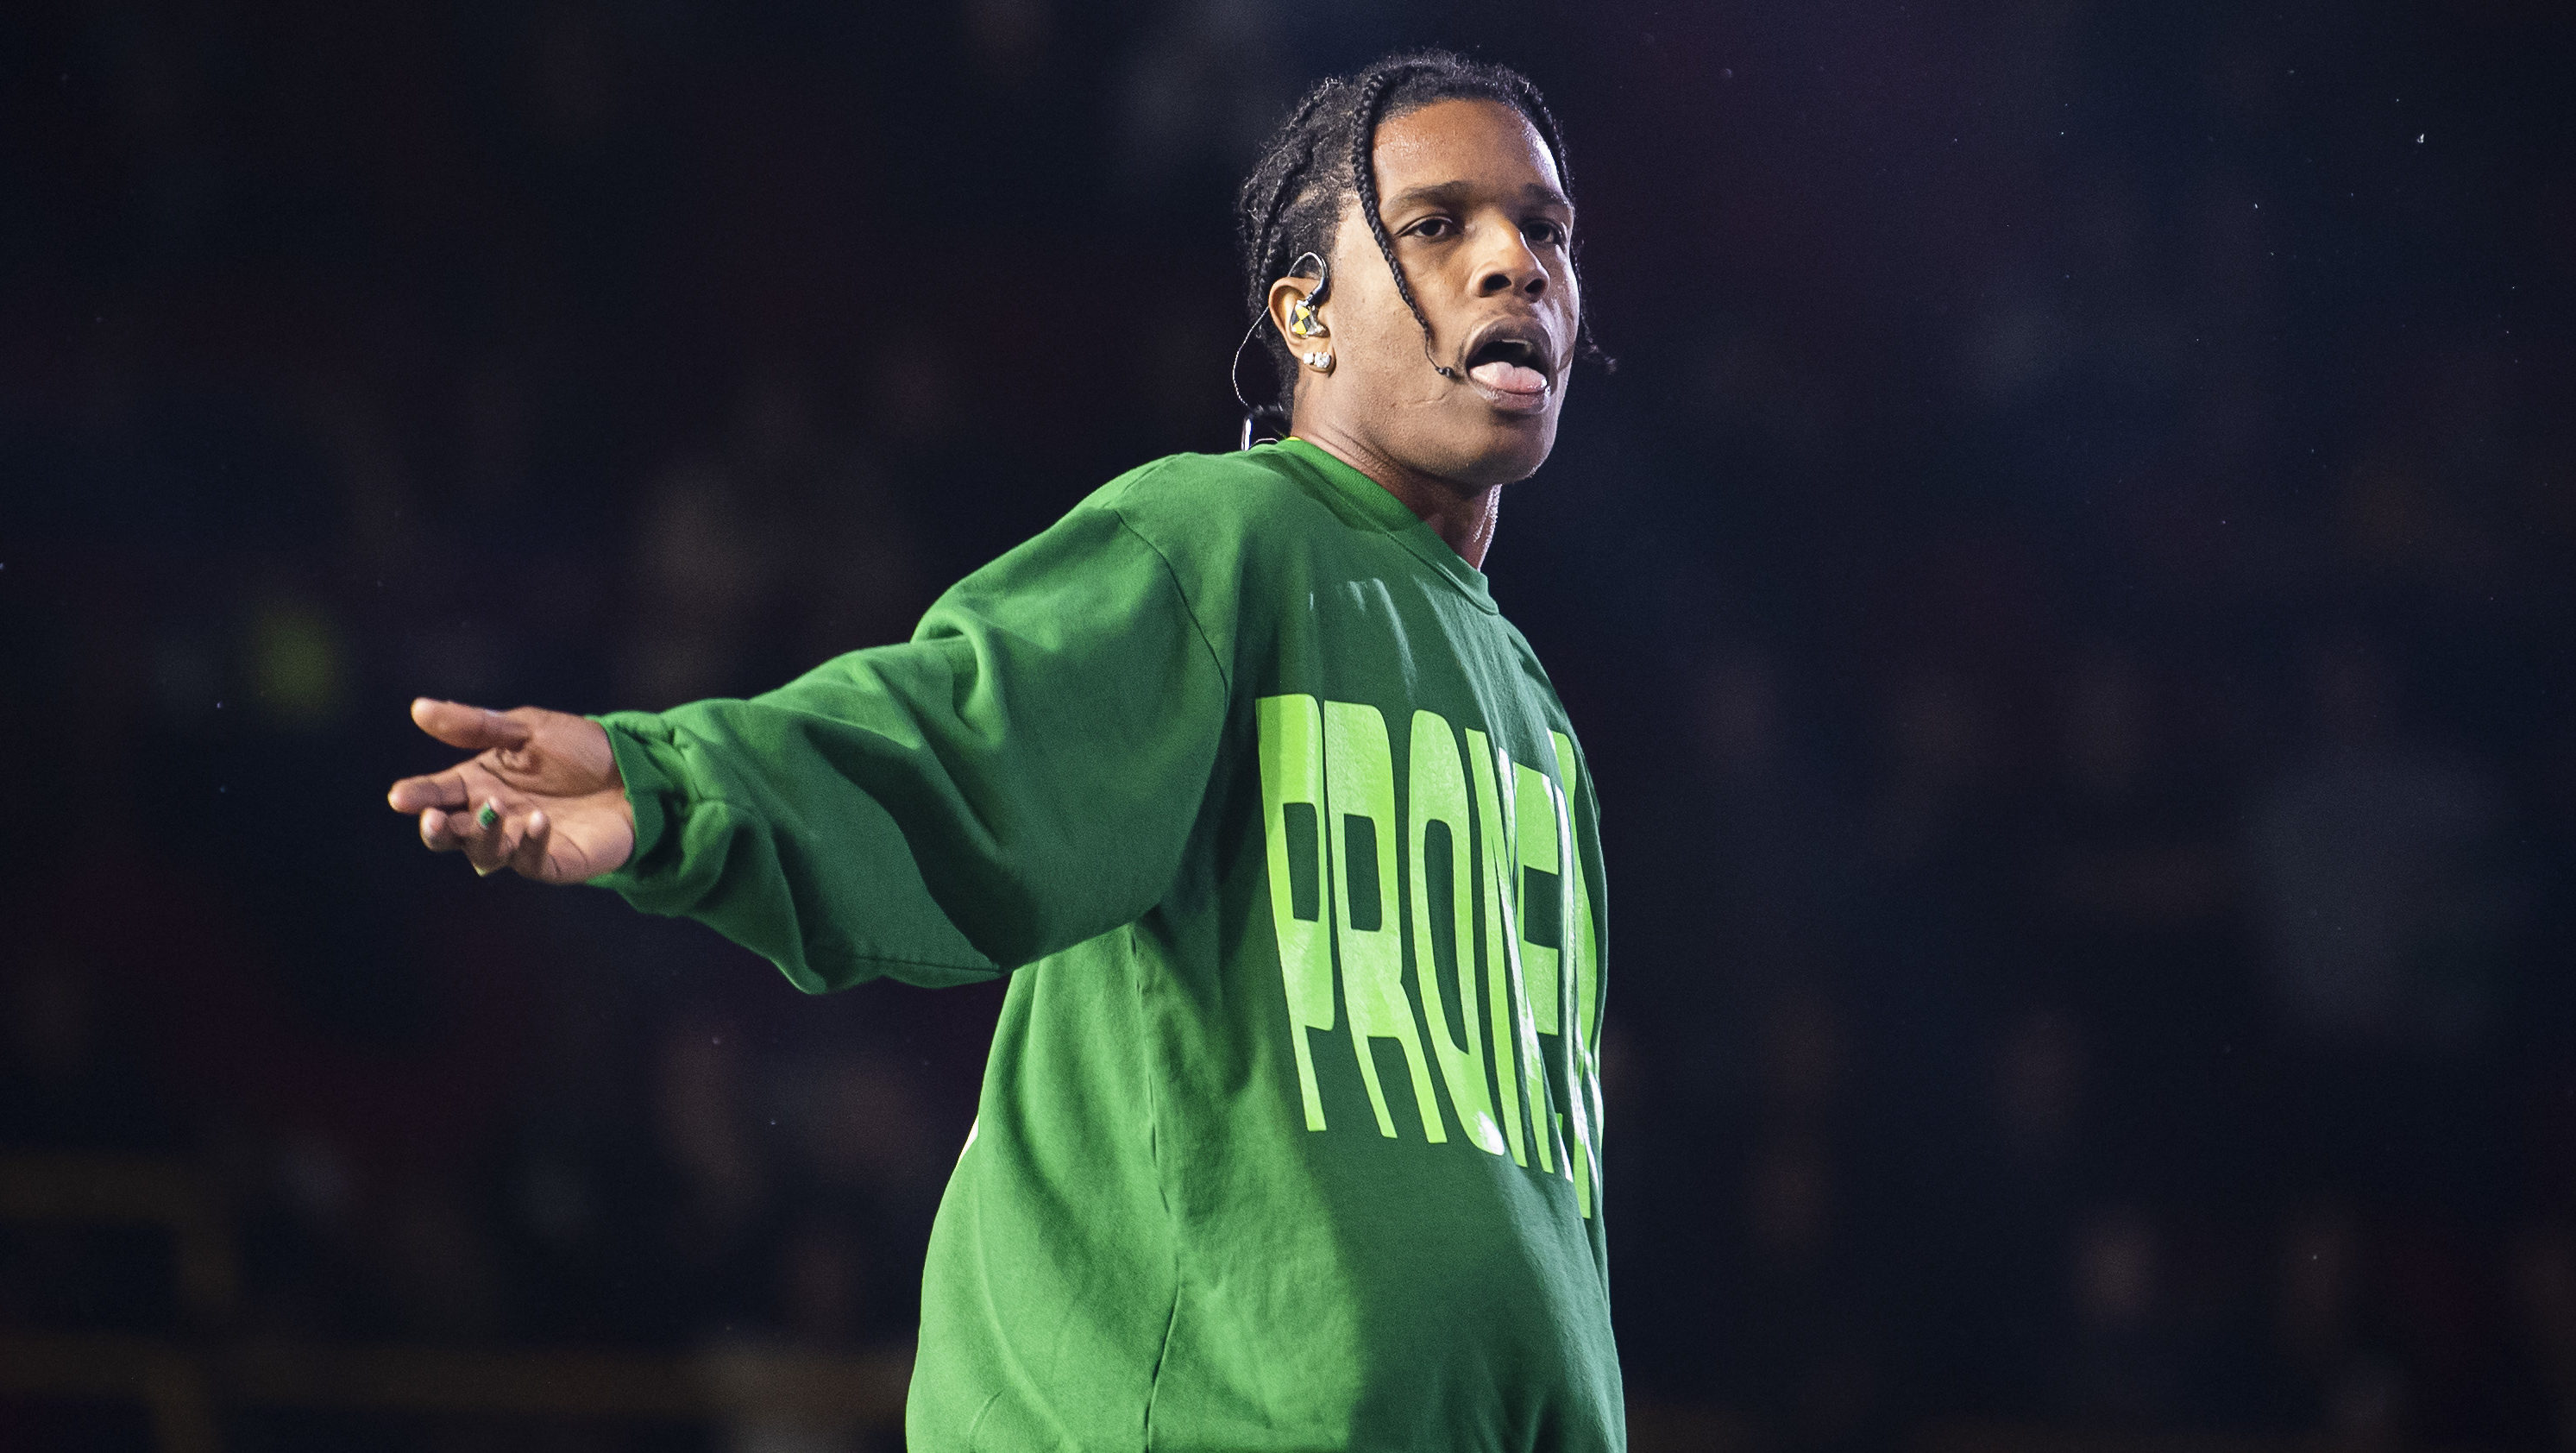 Megoldódott a rejtély, hogy miként került A$AP Rocky pólójára az Unicum posztere